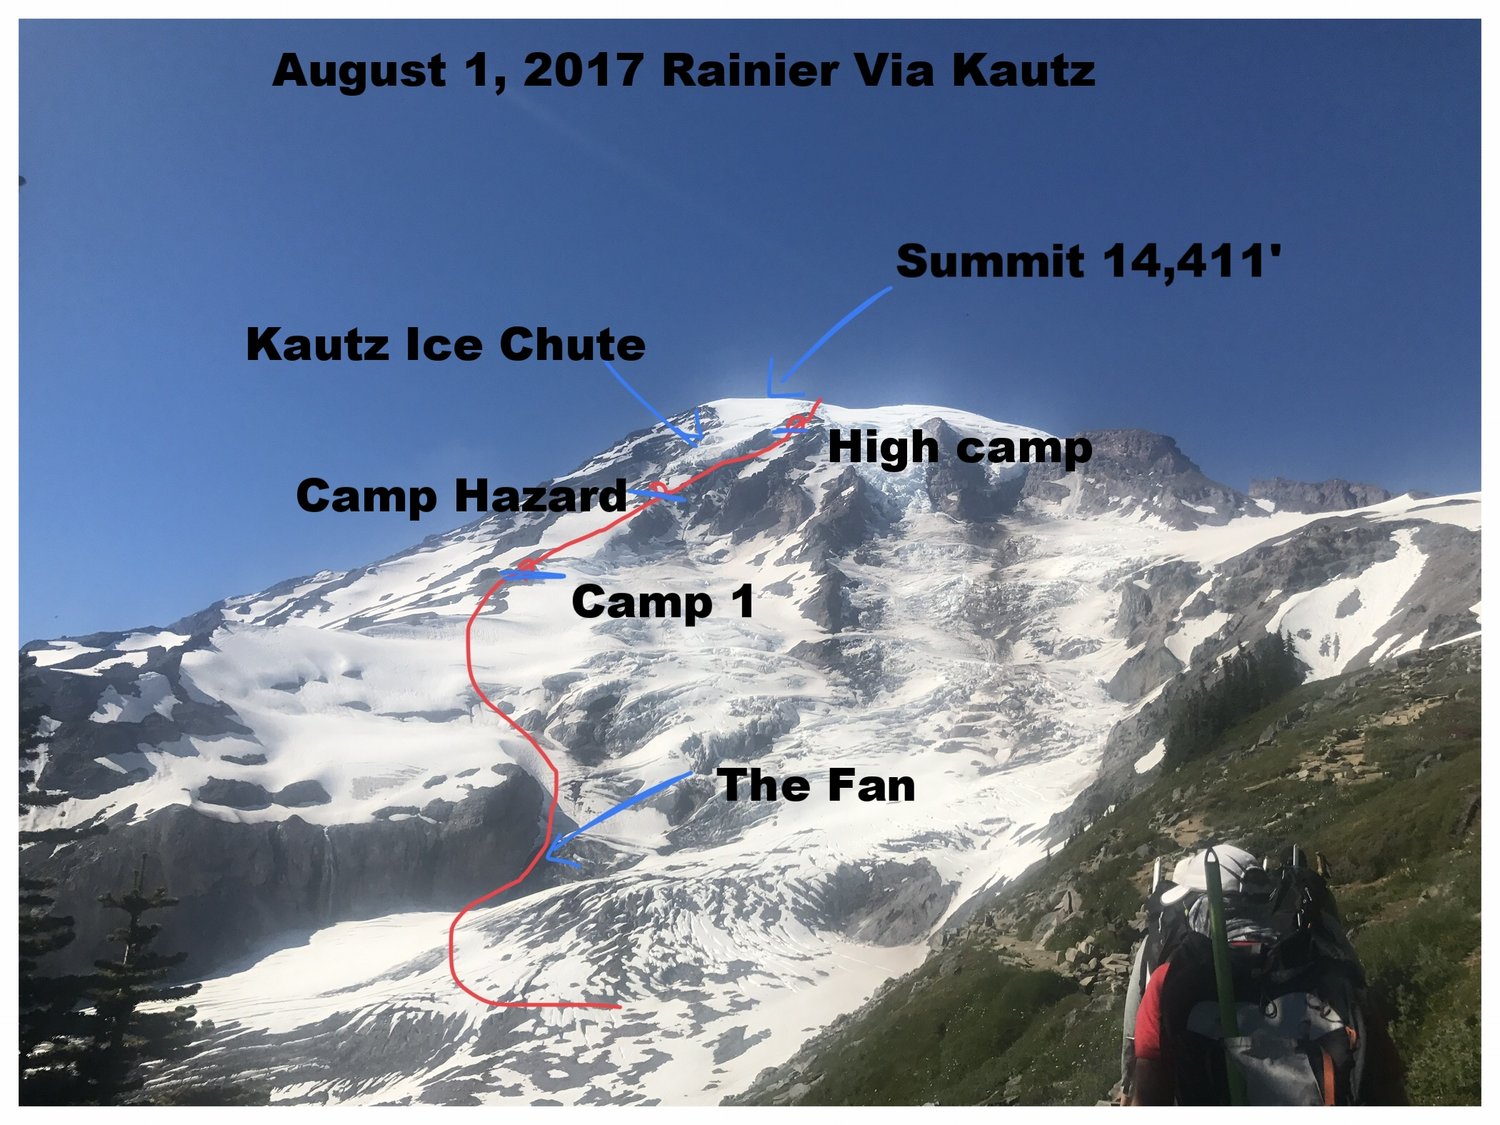 rainier, kautz, Washington, mountaineering, climbing